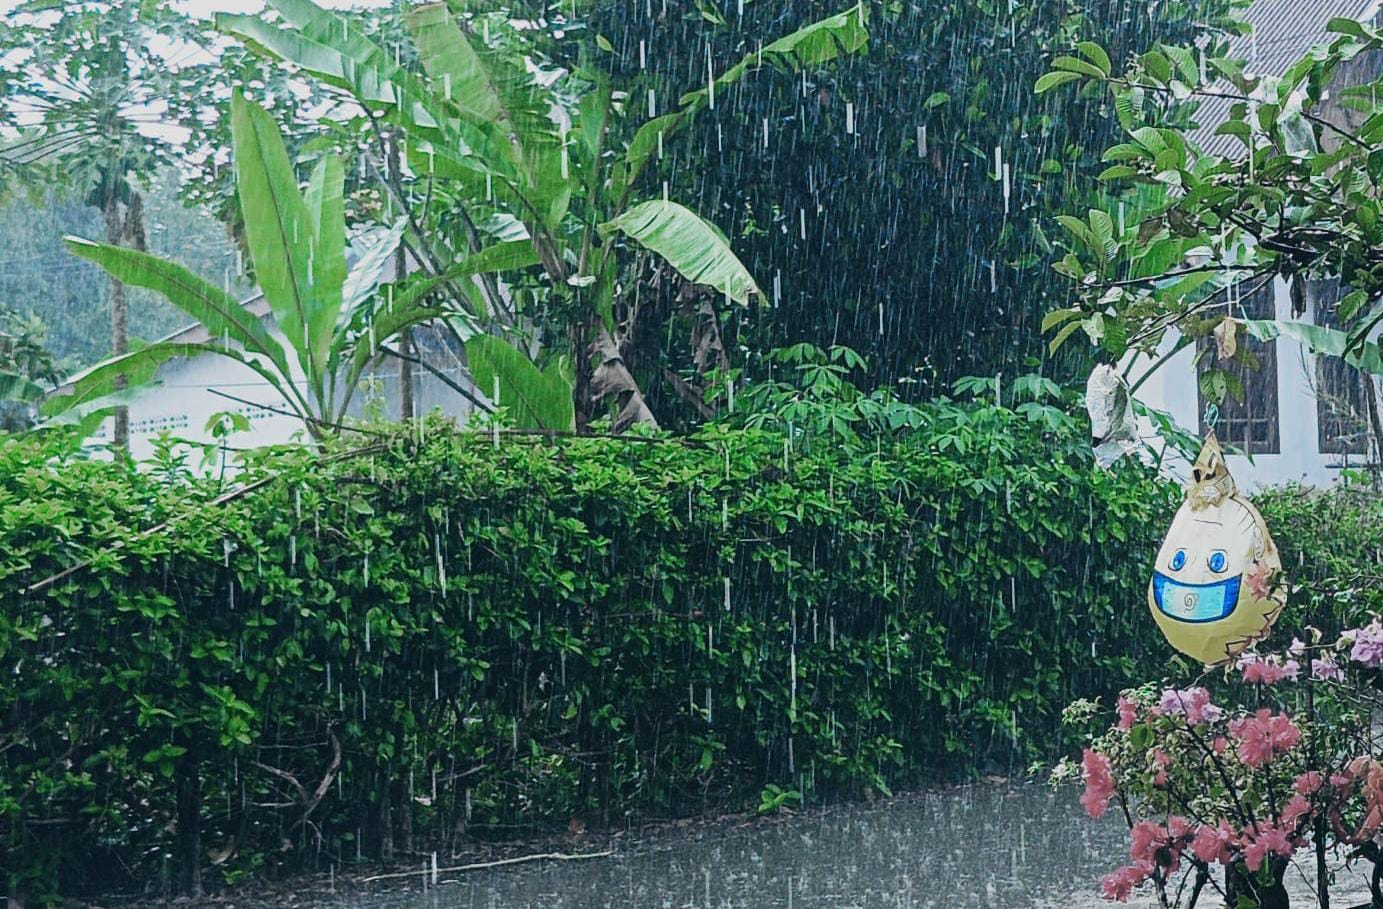 Puncak Hujan Diprediksi Terjadi di Januari-Februari, Masyarakat Diminta Waspadai Bencana Alam Akibat La Nina